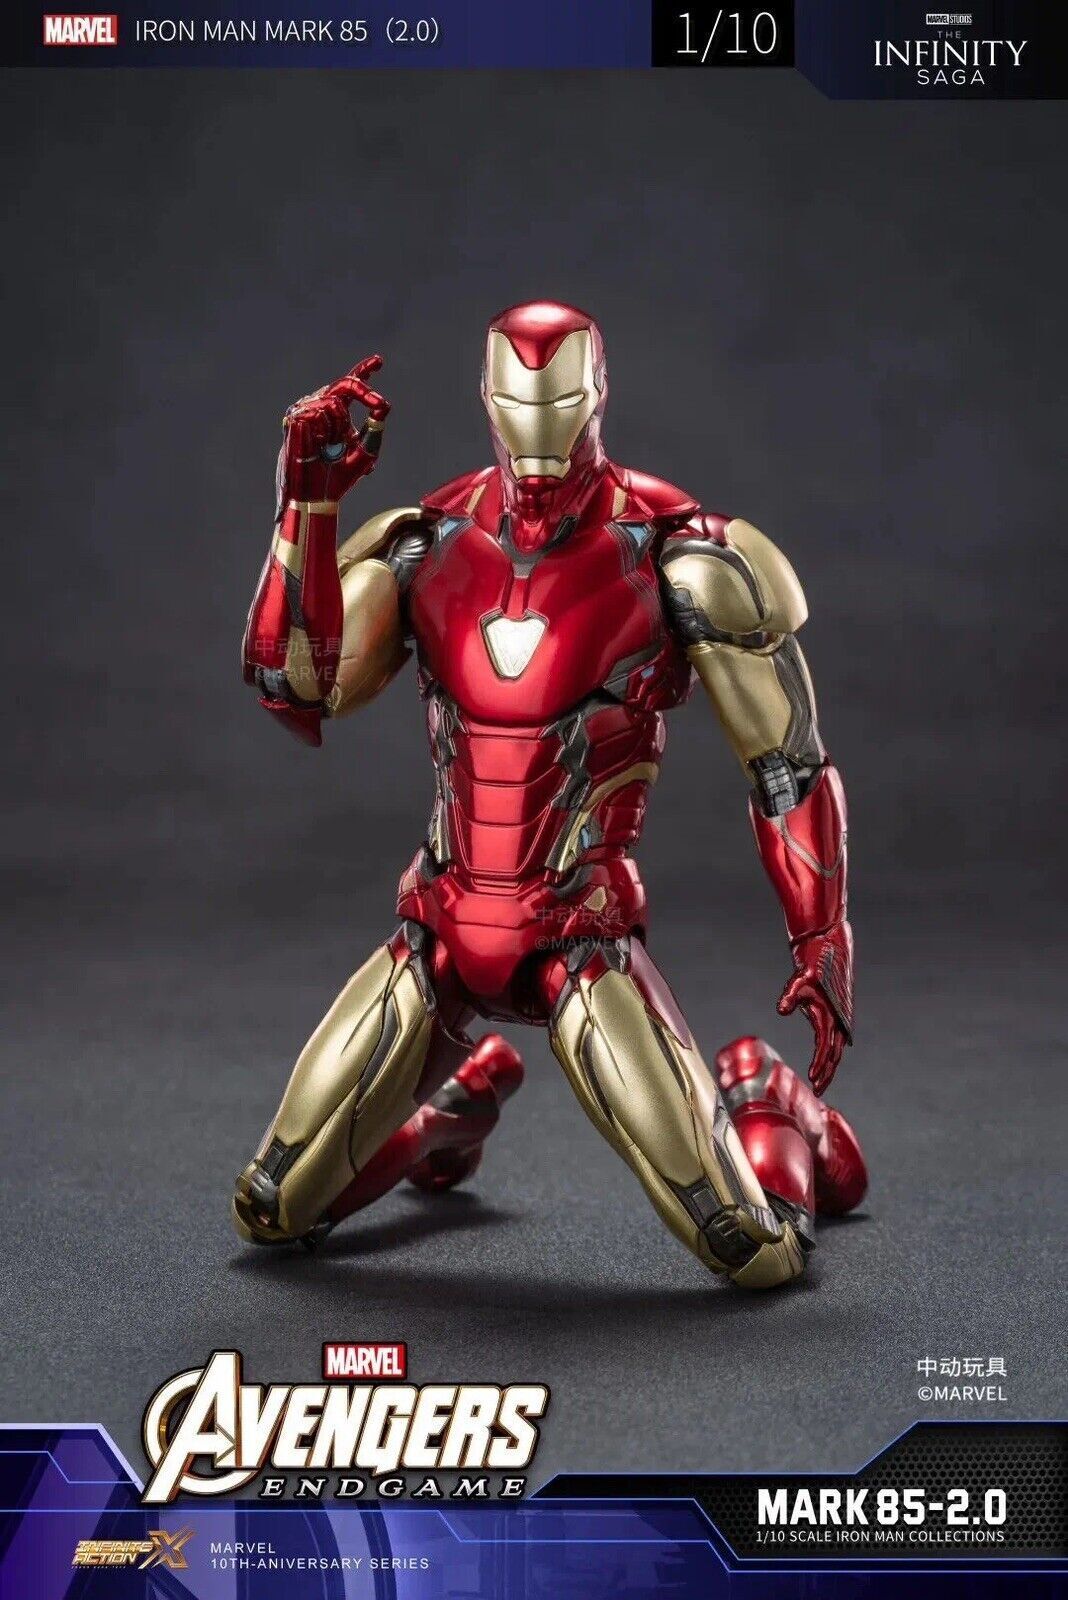 Armored MK85 Iron Man Avengers Endgame Marvel Action Figure mark 85 ZD TOYS